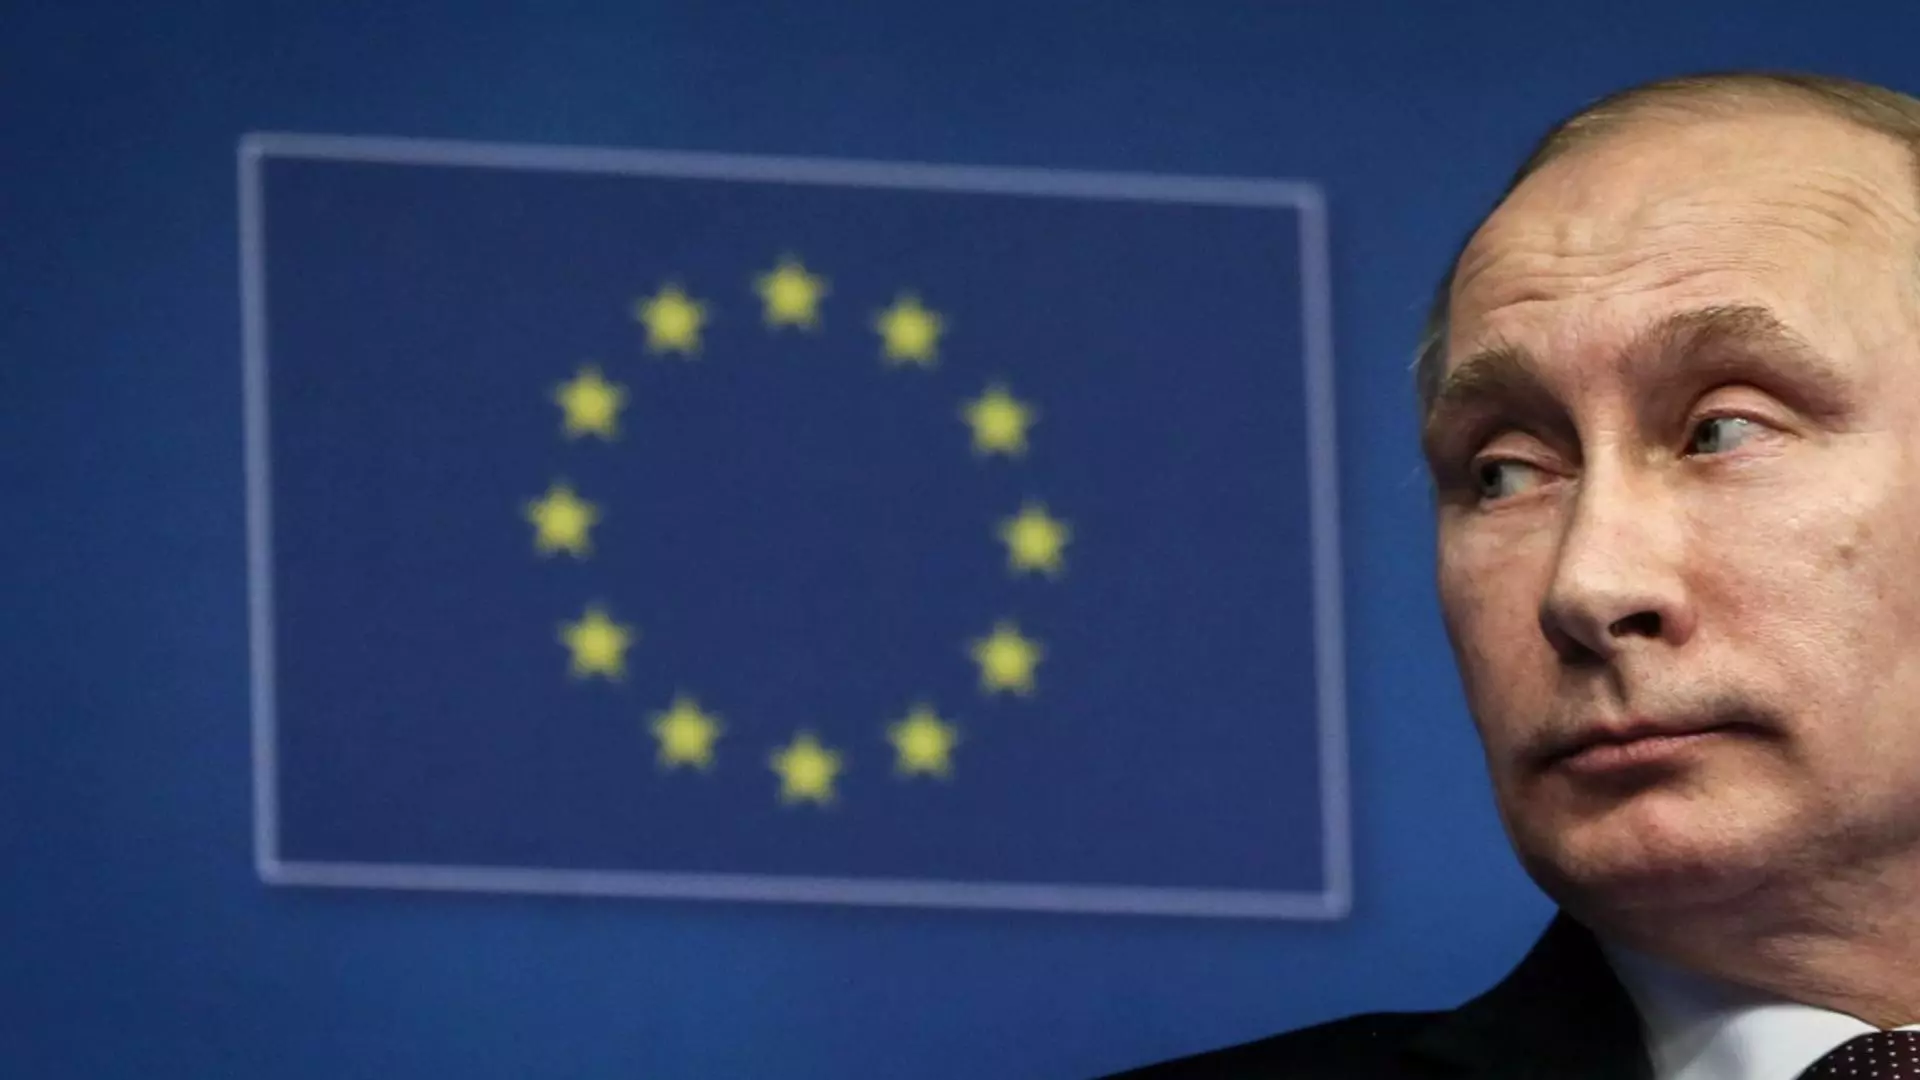 Bruxelles răspunde la amenințarea nucleară a lui Putin: Al 8-lea pachet de sancțiuni contra Rusiei și livrări de arme către Ucraina